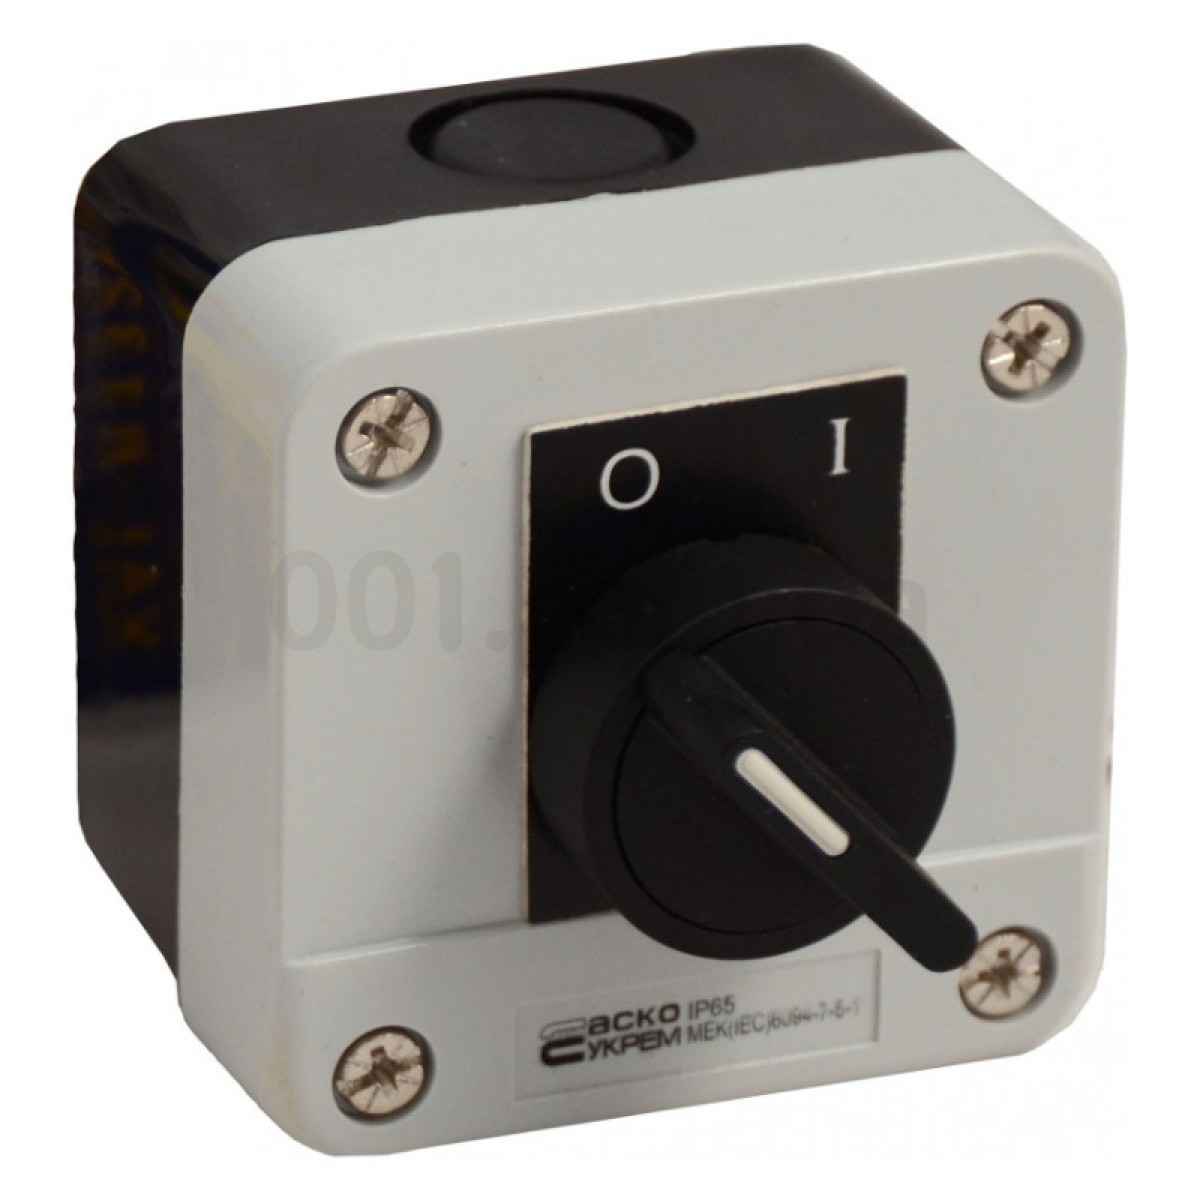 Пост кнопочный одноместный переключатель на 2 положения (O-I) XAL-B132Н29, АСКО-УКРЕМ 256_256.jpg